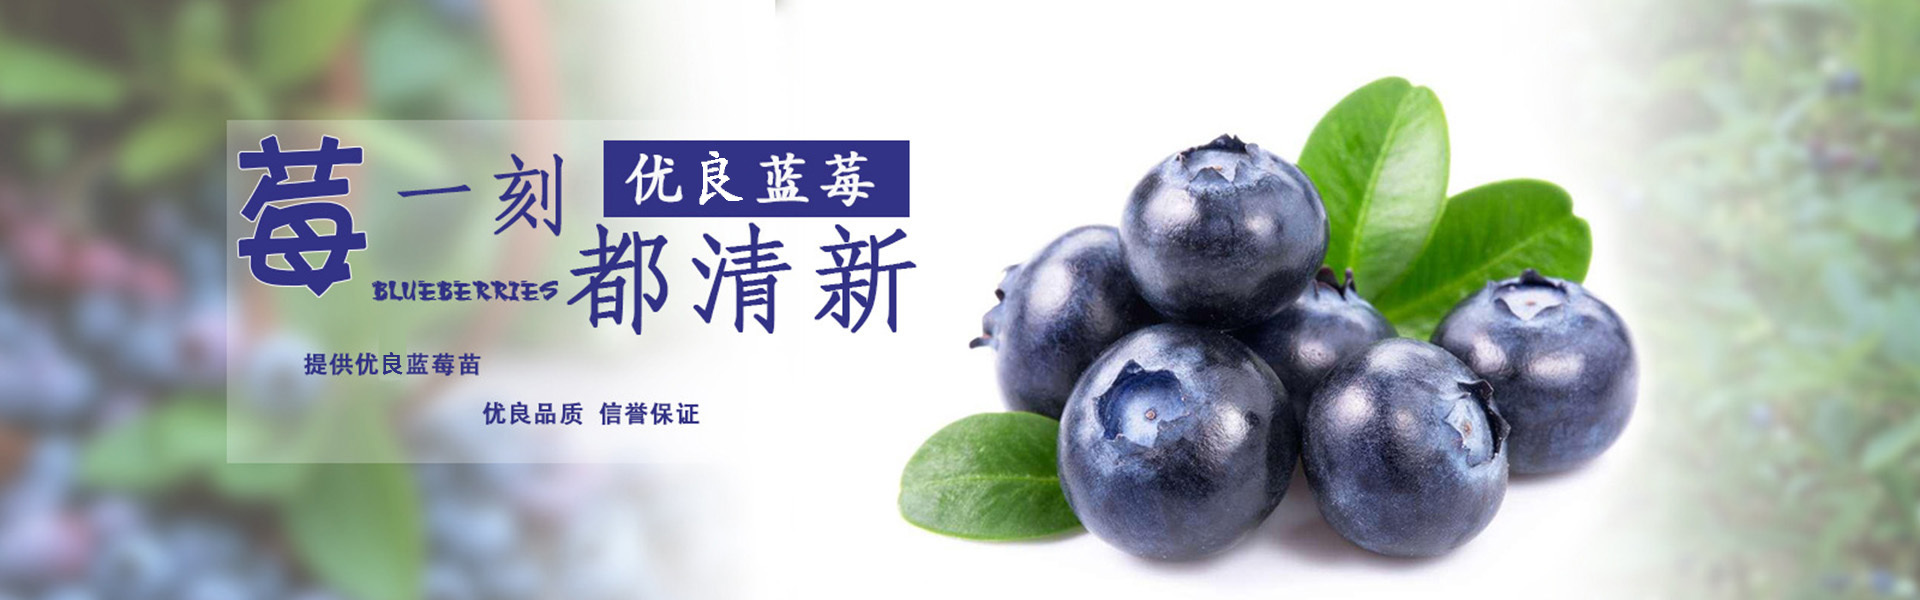 藍莓種苗